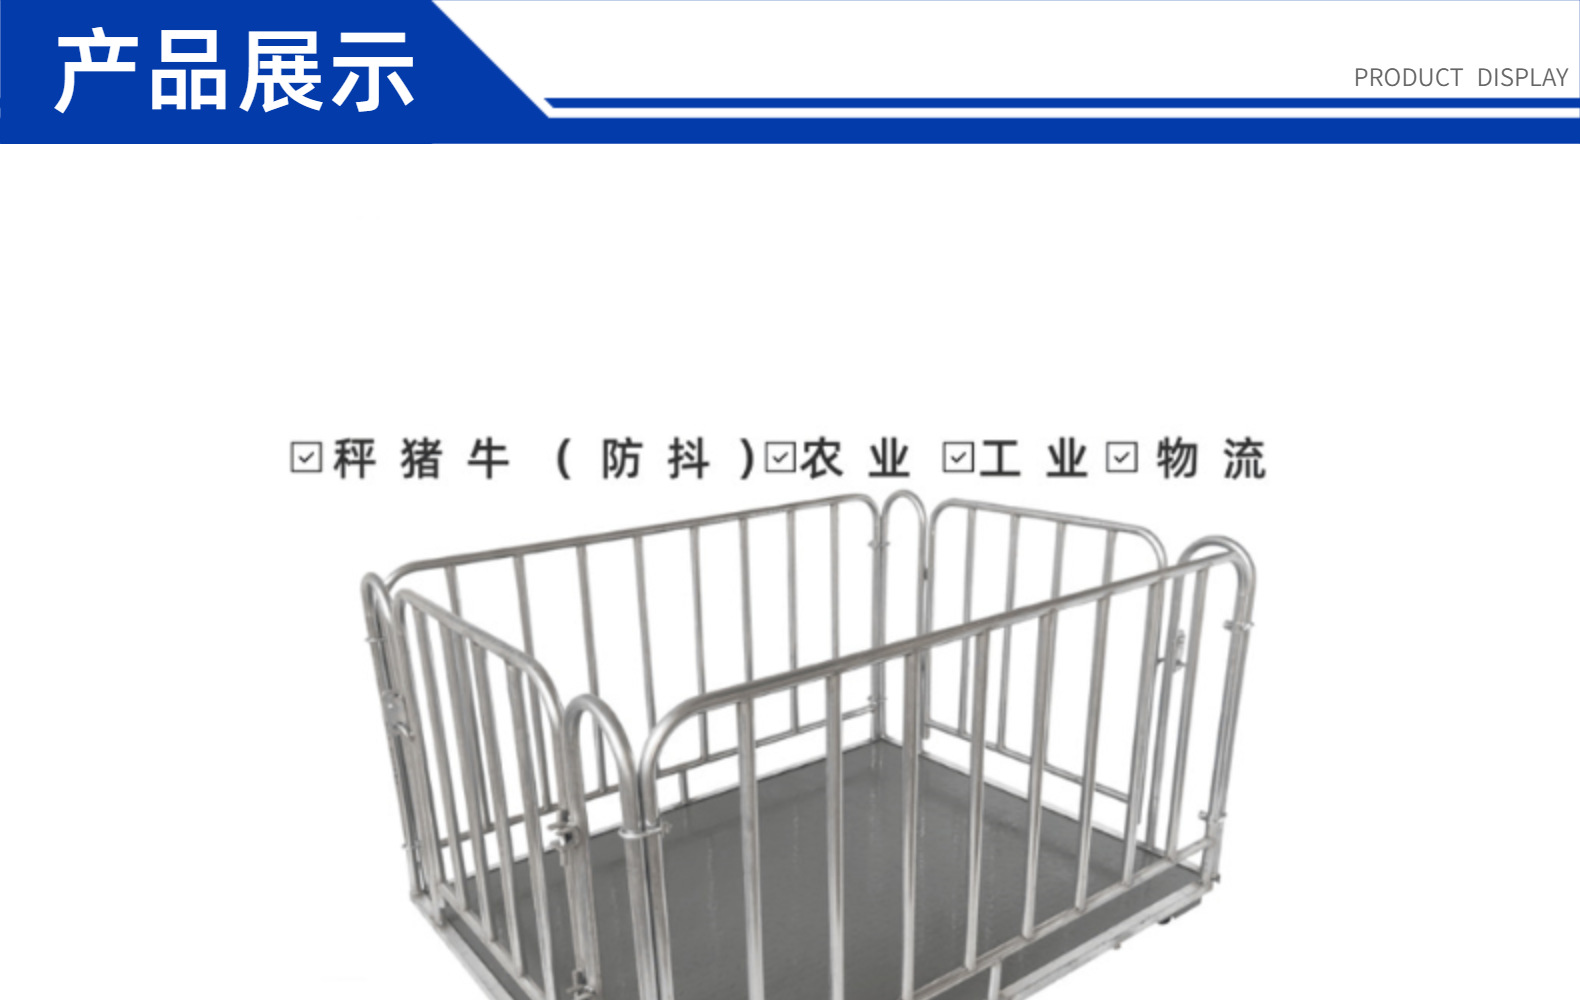 廊坊秤猪地磅笼 1-3吨上海耀华地磅 1.2x1.5米两吨猪笼秤